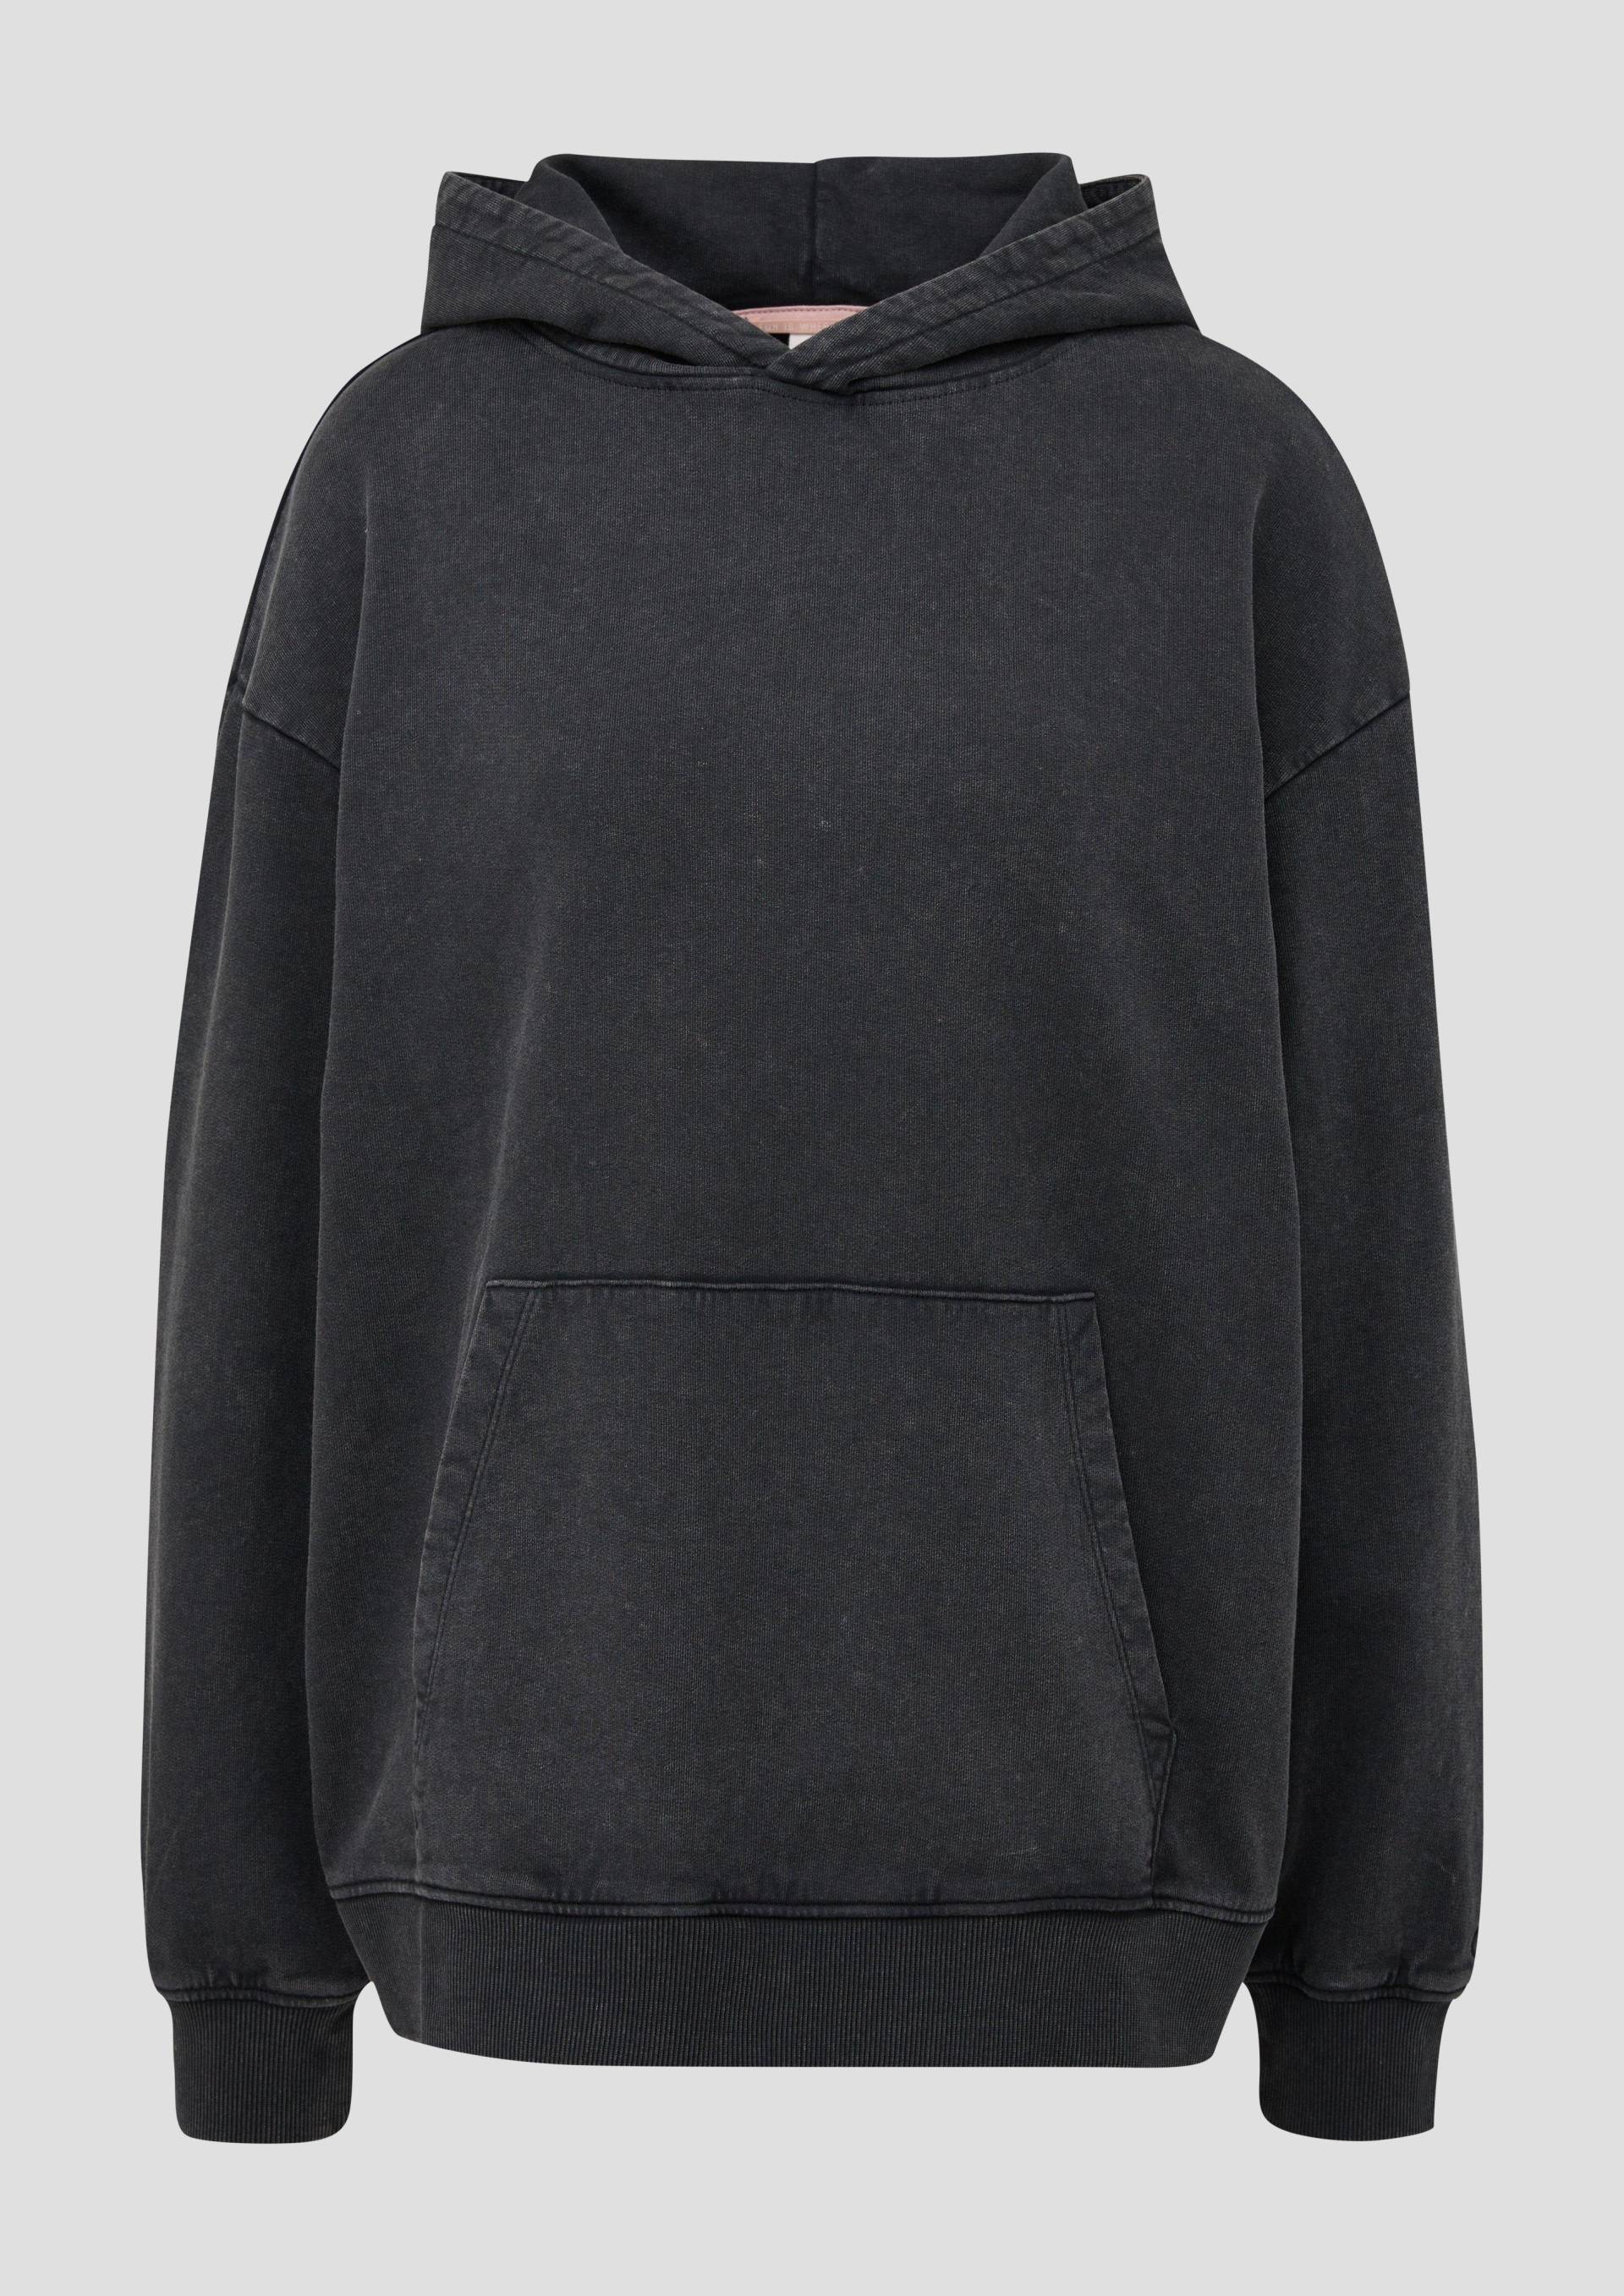 QS - Sweatshirt mit Waschung, Damen, schwarz von QS